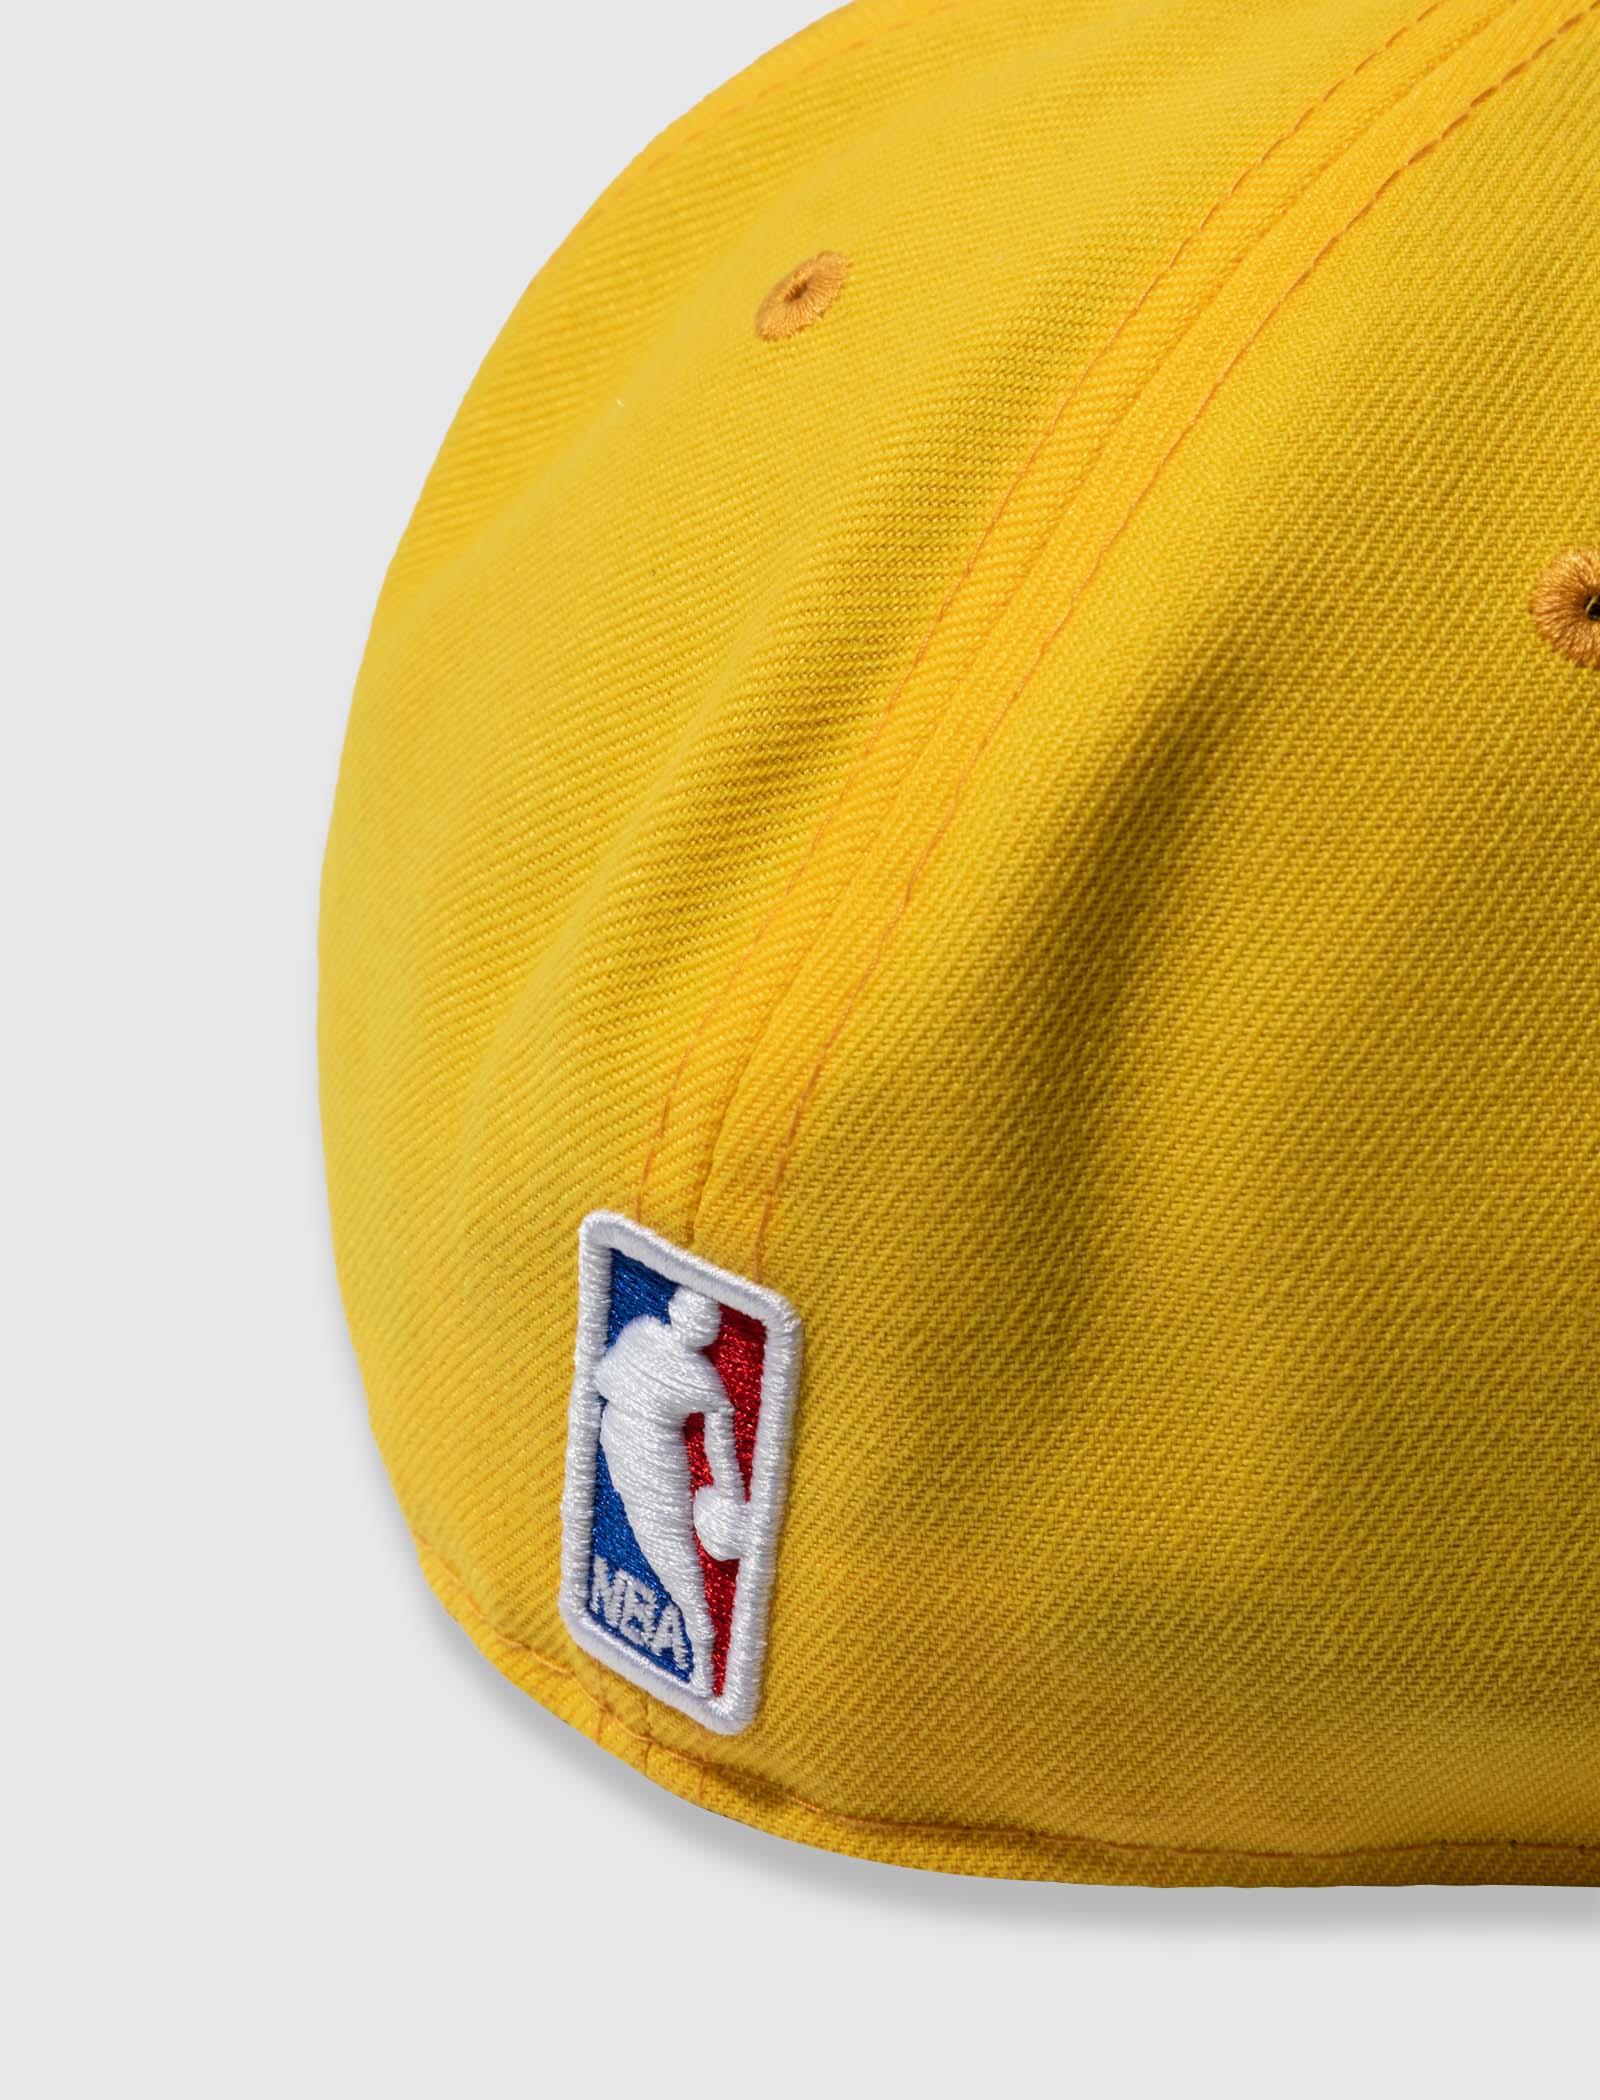 Venice Street Wear Lakers Hat Yellow